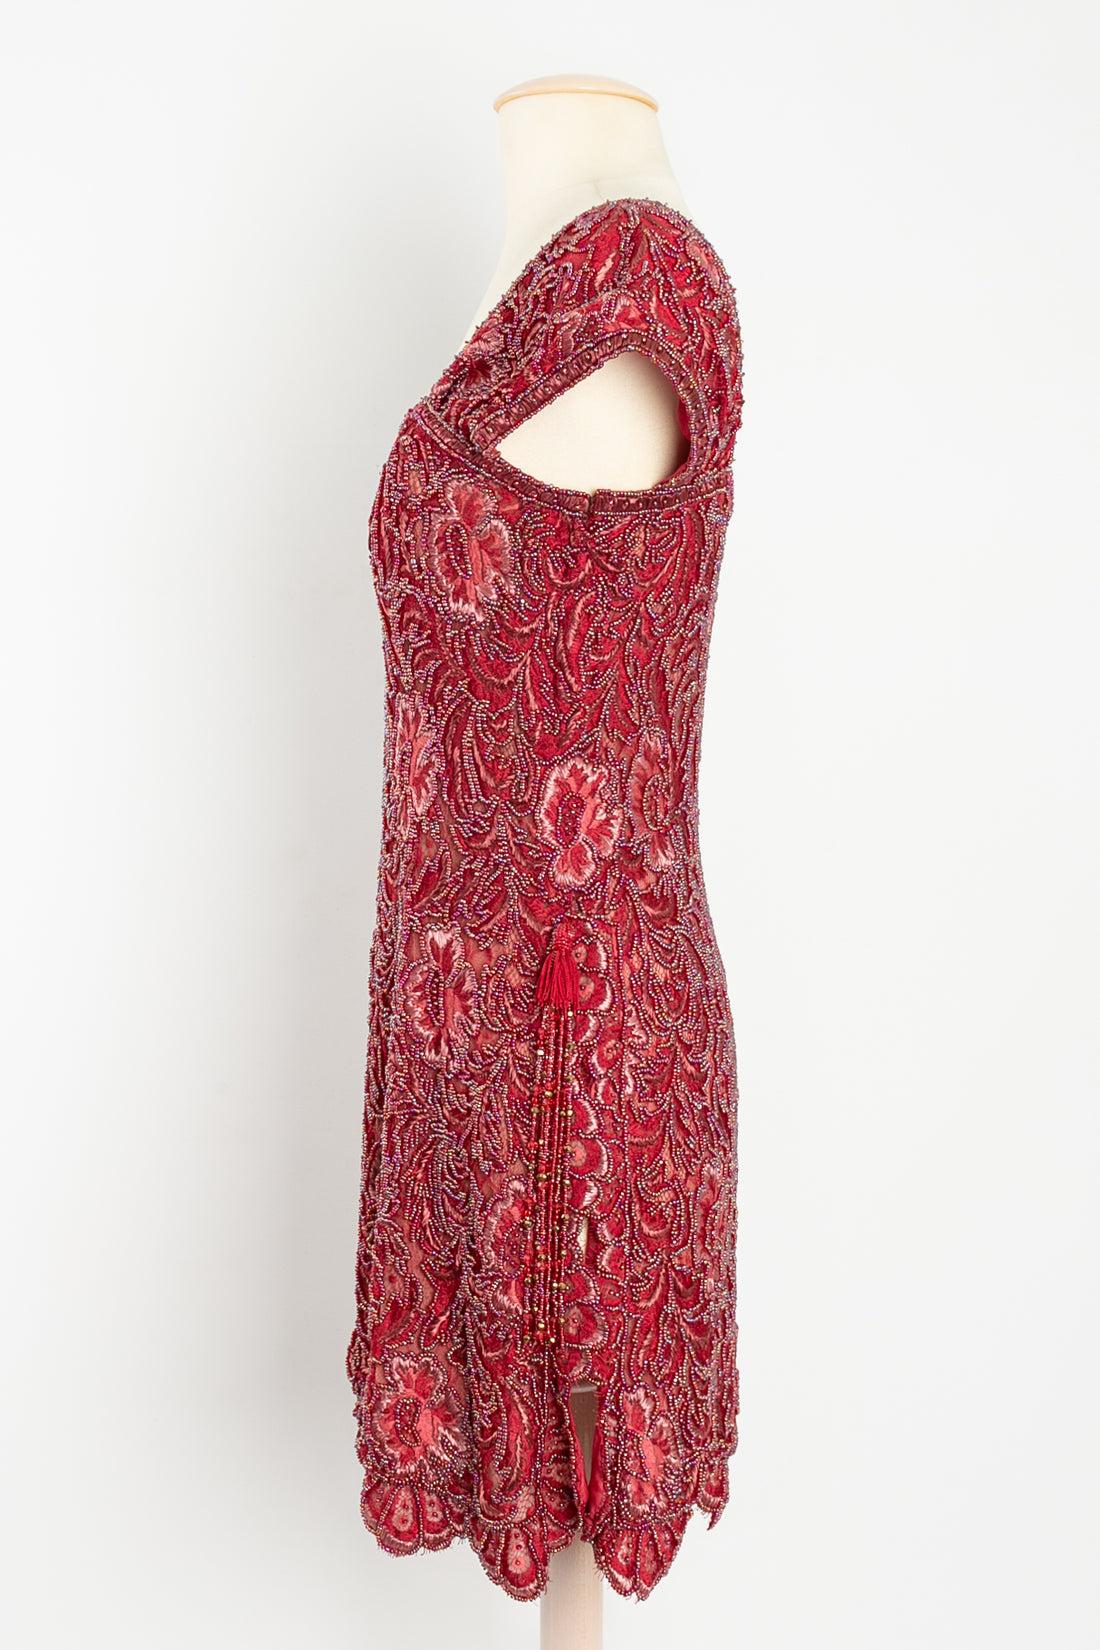 Emanuel Ungaro Couture - Paris Bolduc : 3194-5-94 Robe composée de trois doublures en soie rouge et beige entièrement brodées de perles rouges, de fils tissés et de raphia dans un motif de feuillage et de fleurs. Pas de Label de taille indiqué,